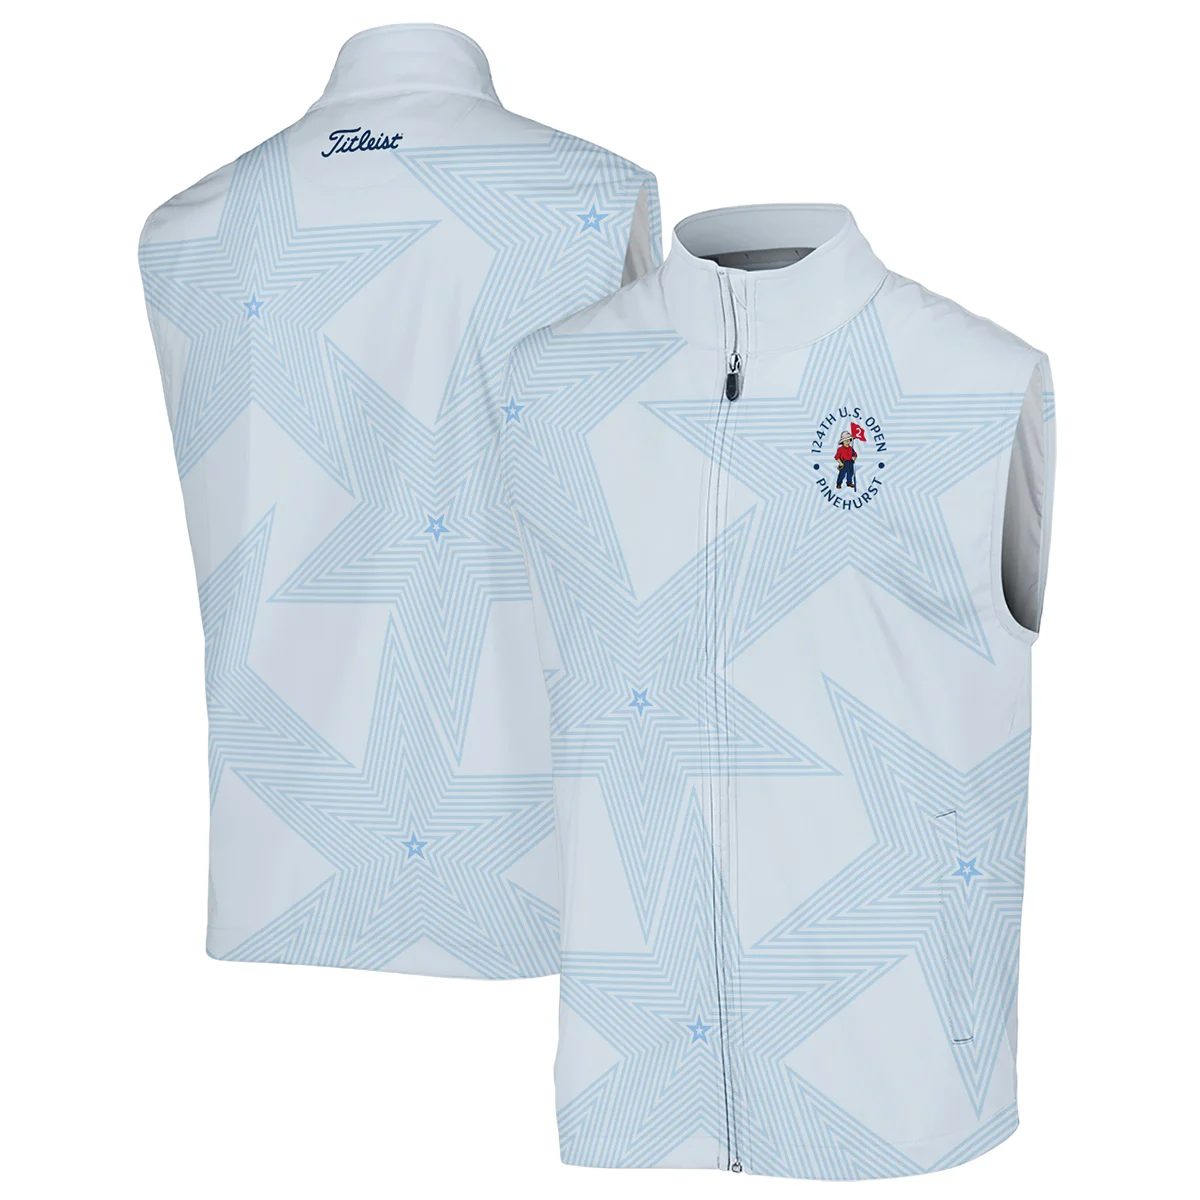 Golf 124th U.S. Open Pinehurst Titleist Unisex T-Shirt Stars Light Blue Golf Sports All Over Print T-Shirt